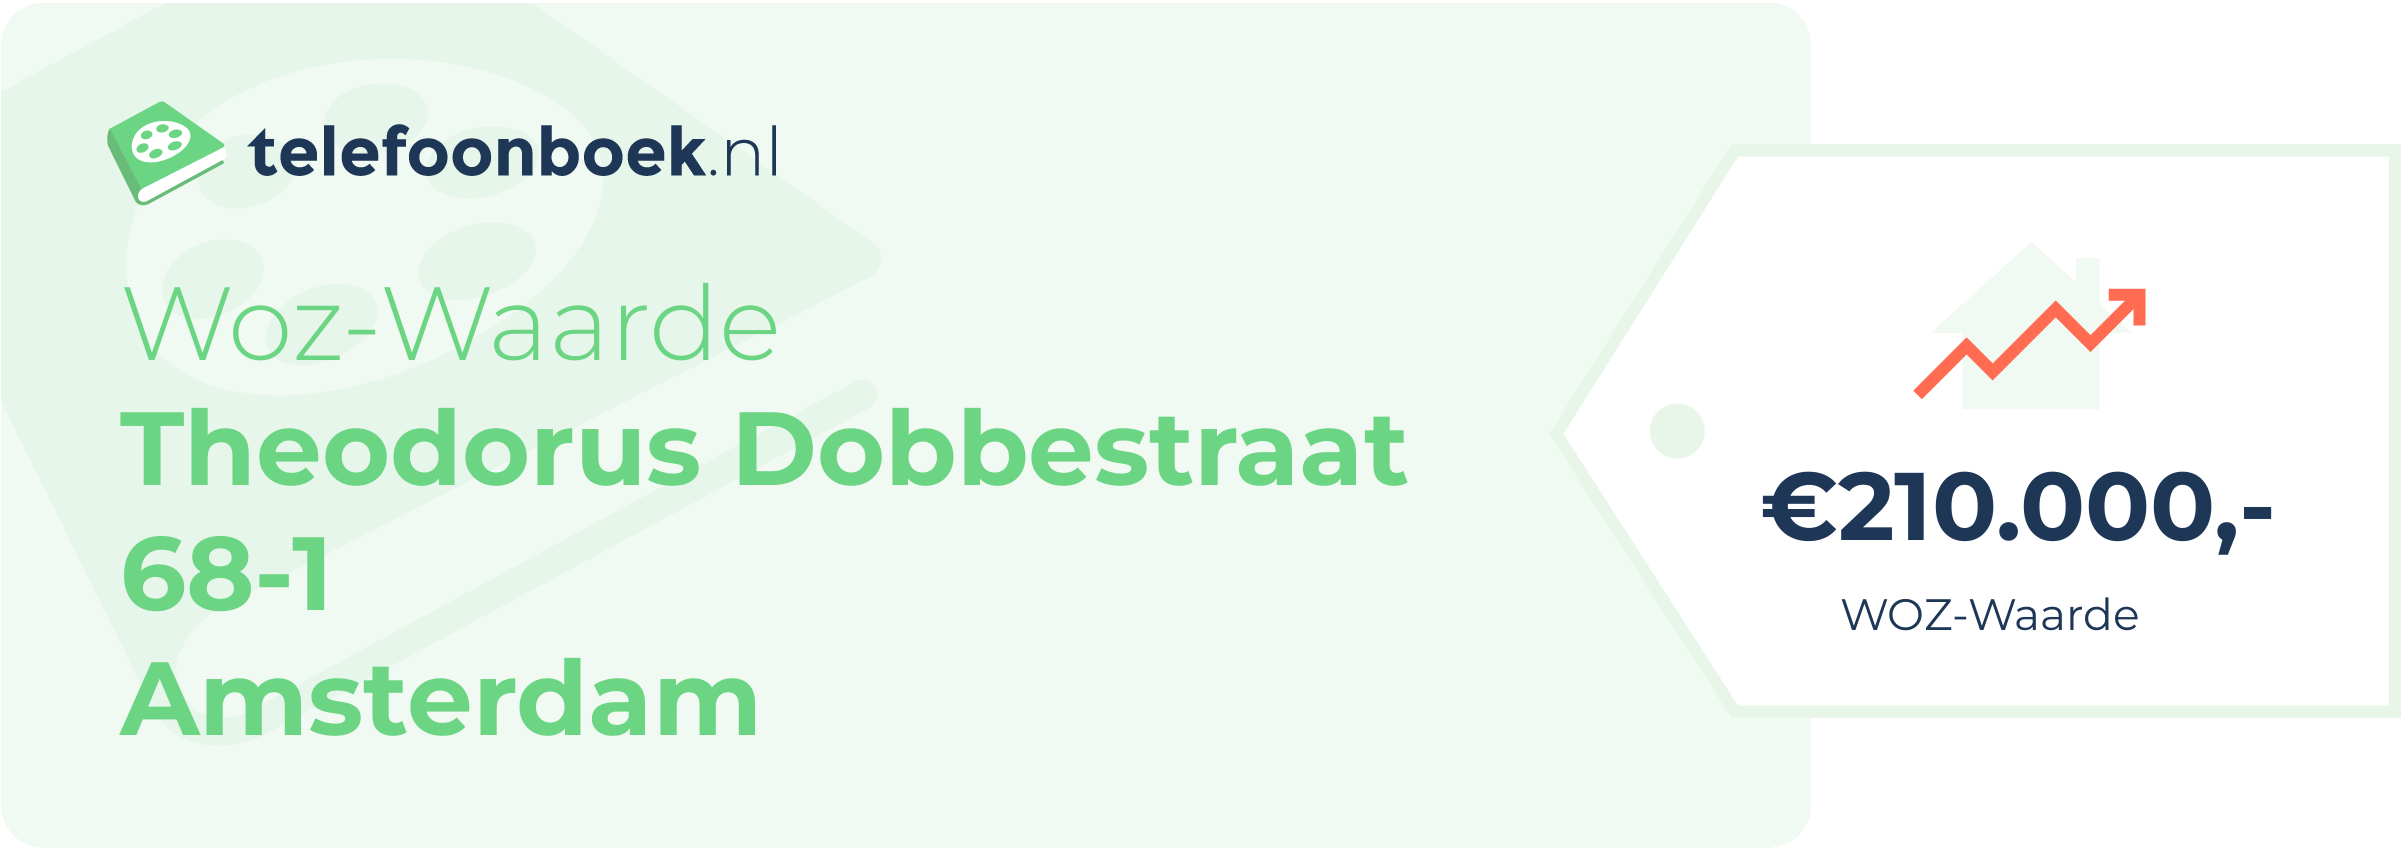 WOZ-waarde Theodorus Dobbestraat 68-1 Amsterdam